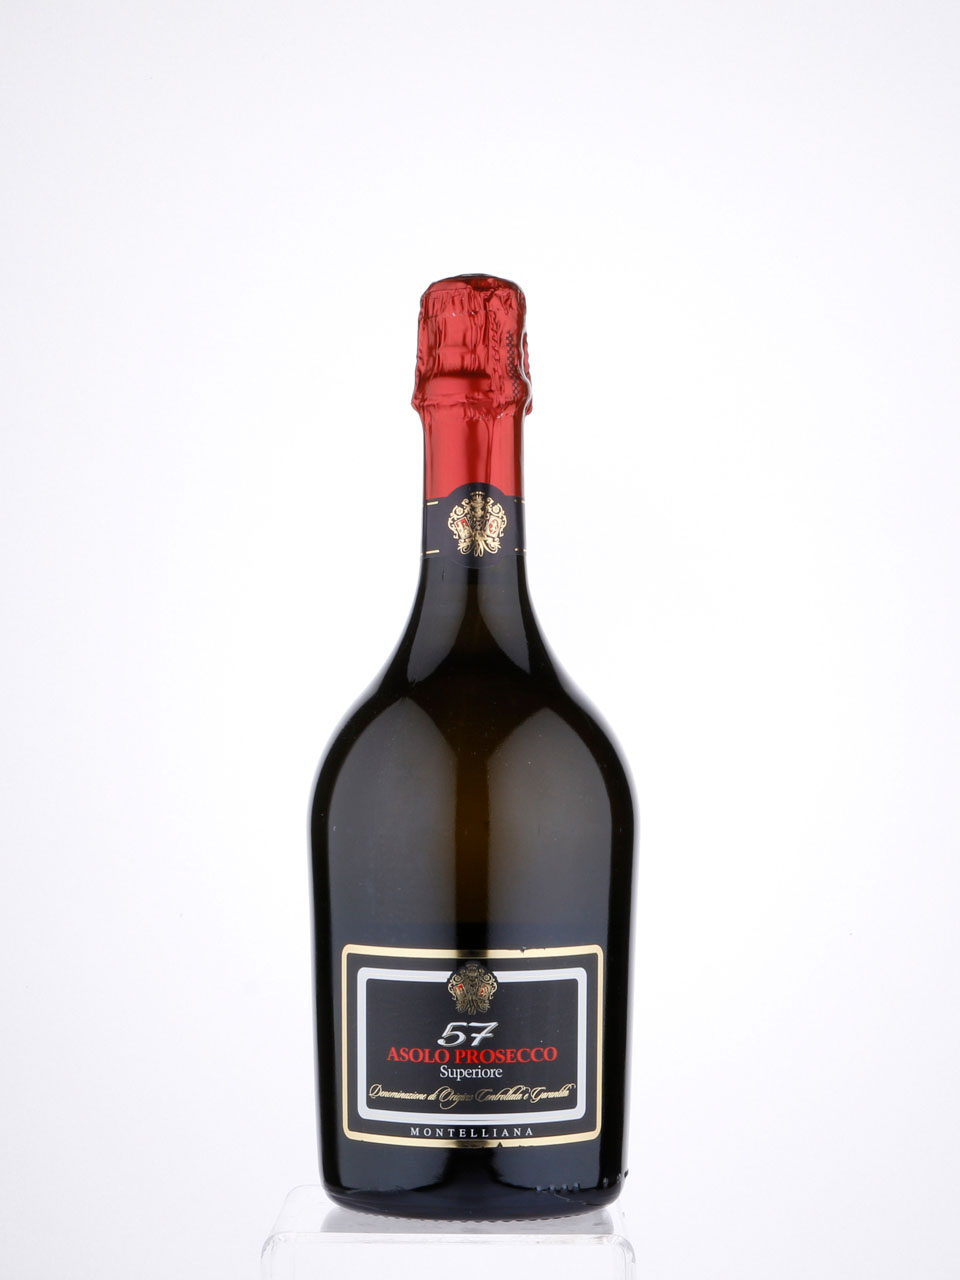 Asolo prosecco. Вино игристое Montelliana 57 Asolo Prosecco superiore, 0.75 л.